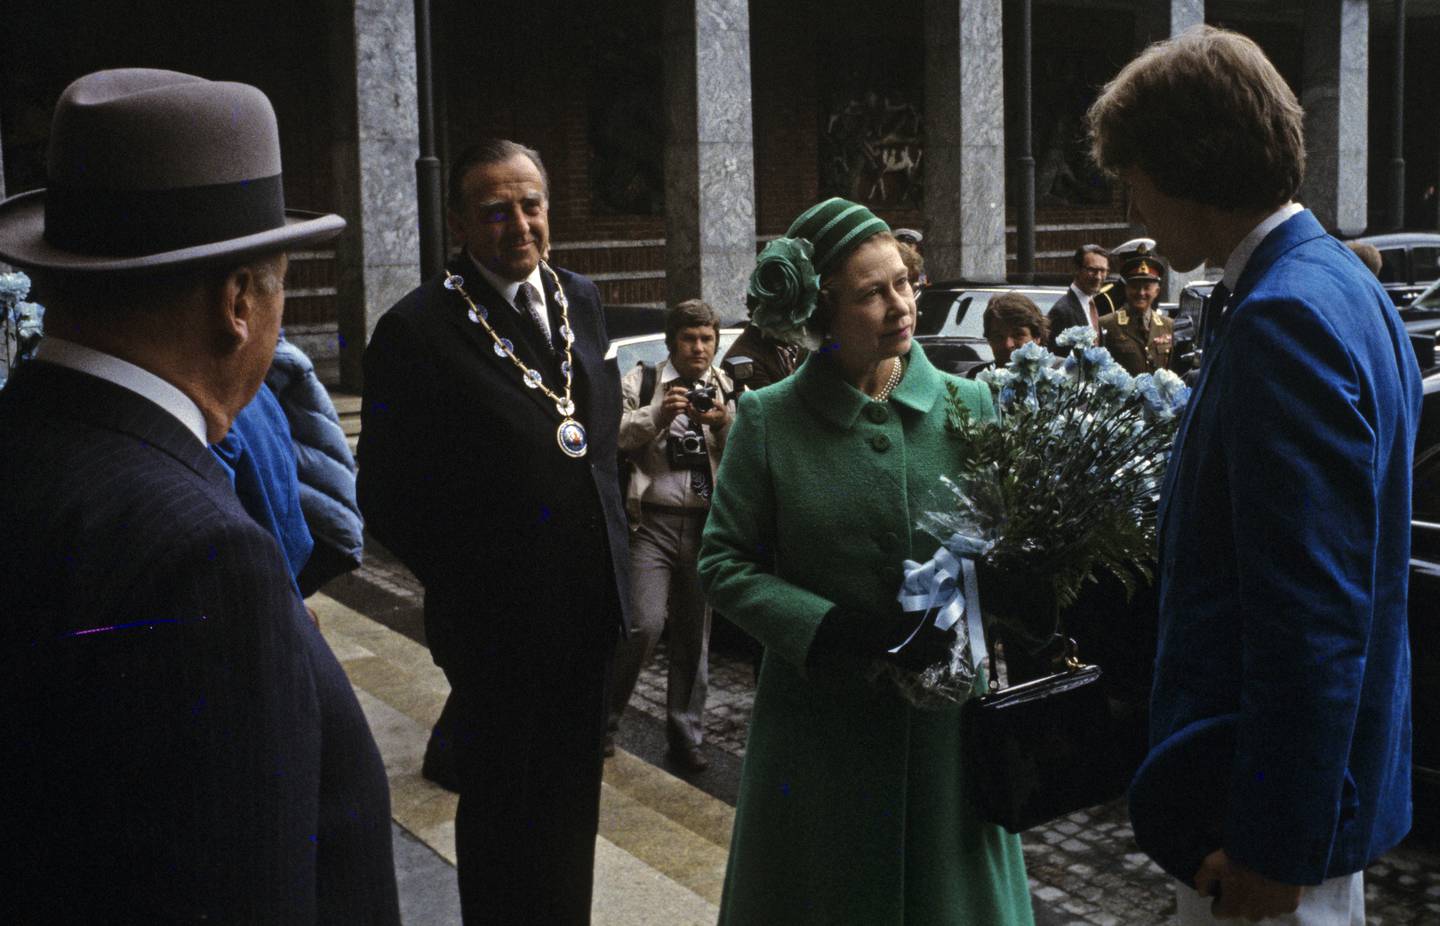 Dronning Elizabeth på offisielt besøk i Norge i mai 1981. Her får dronningen blomster av det årets russepresident, Rolv Erik Ryssdal. Kong Olav og Oslos ordfører Albert Nordengen (H) til venstre. Foto: NTB